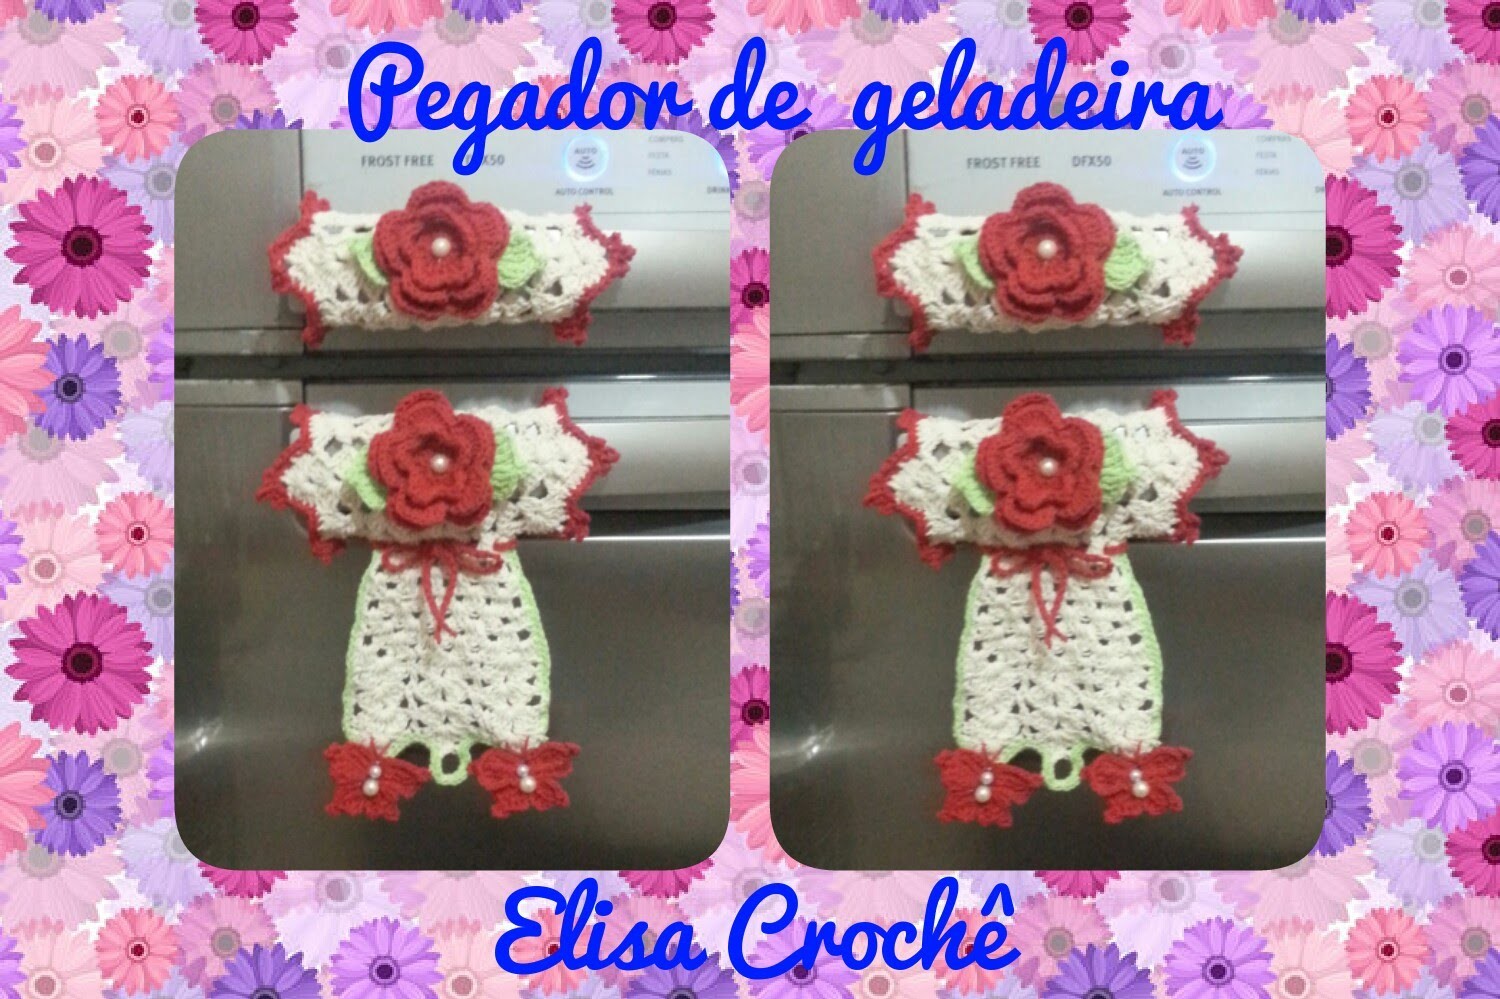 Versao destros : Pegador de geladeira borboletas em crochê ( 2ª parte final ) # Elisa Crochê